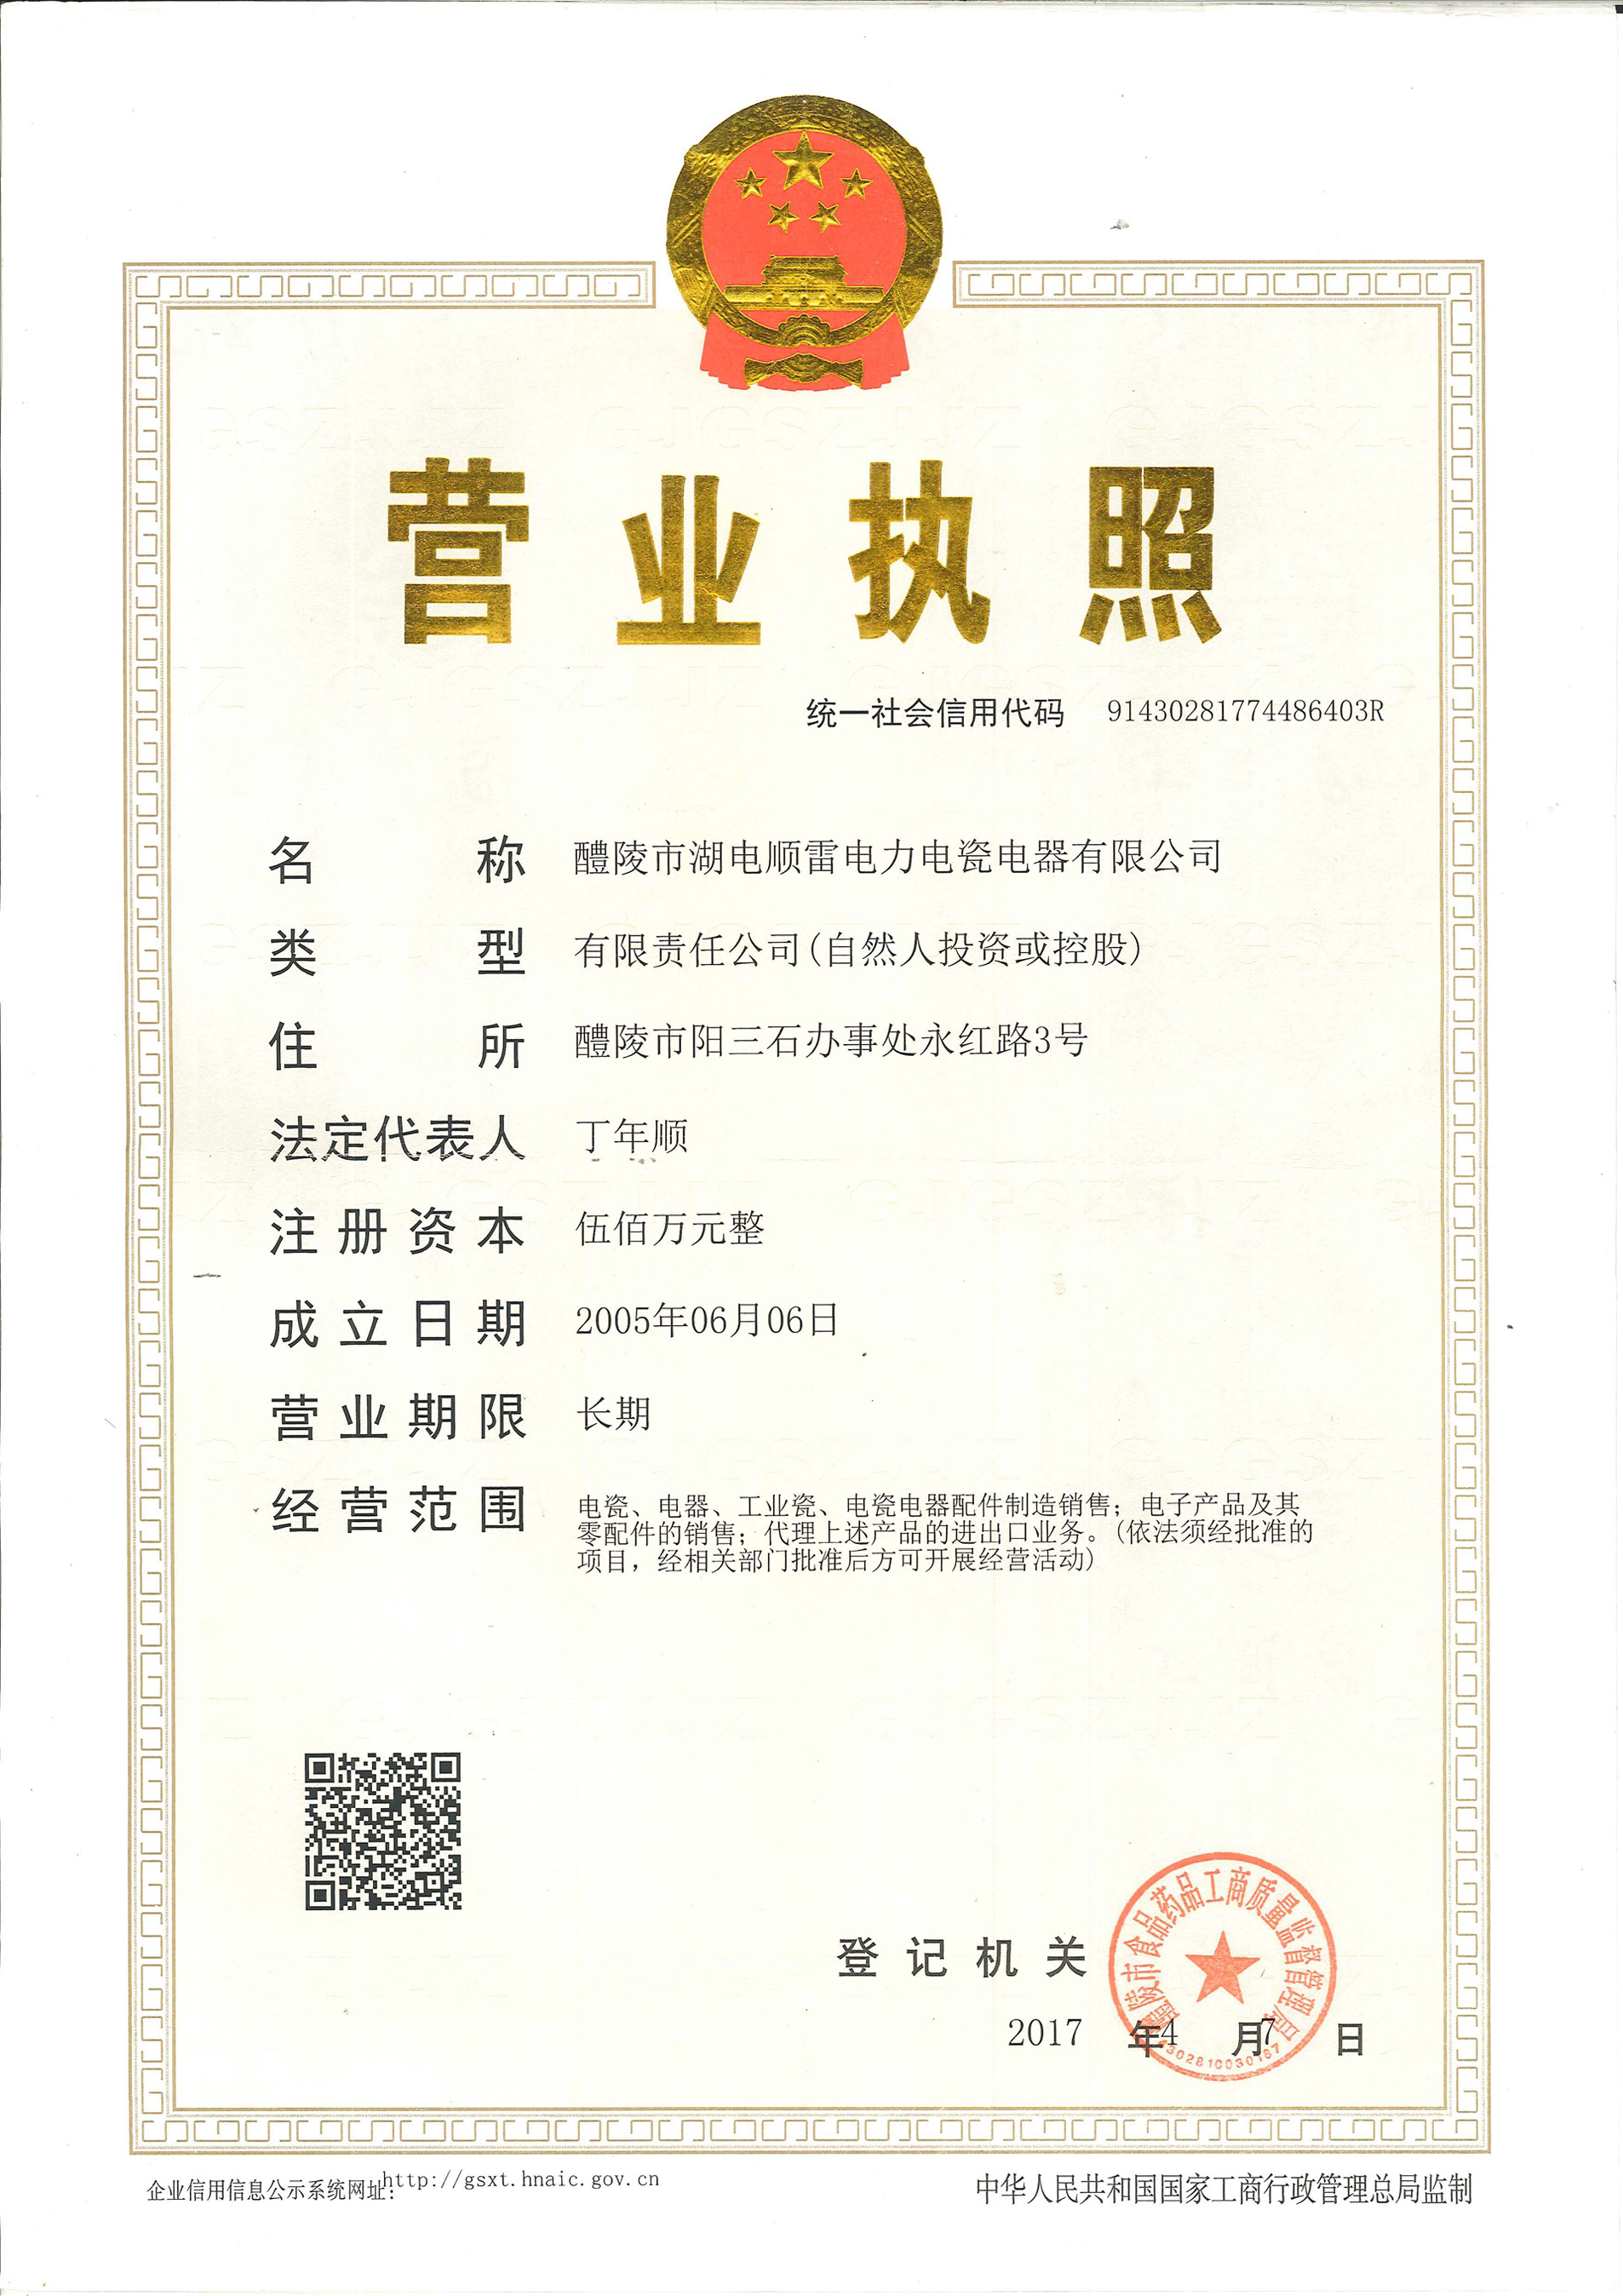 Company License 